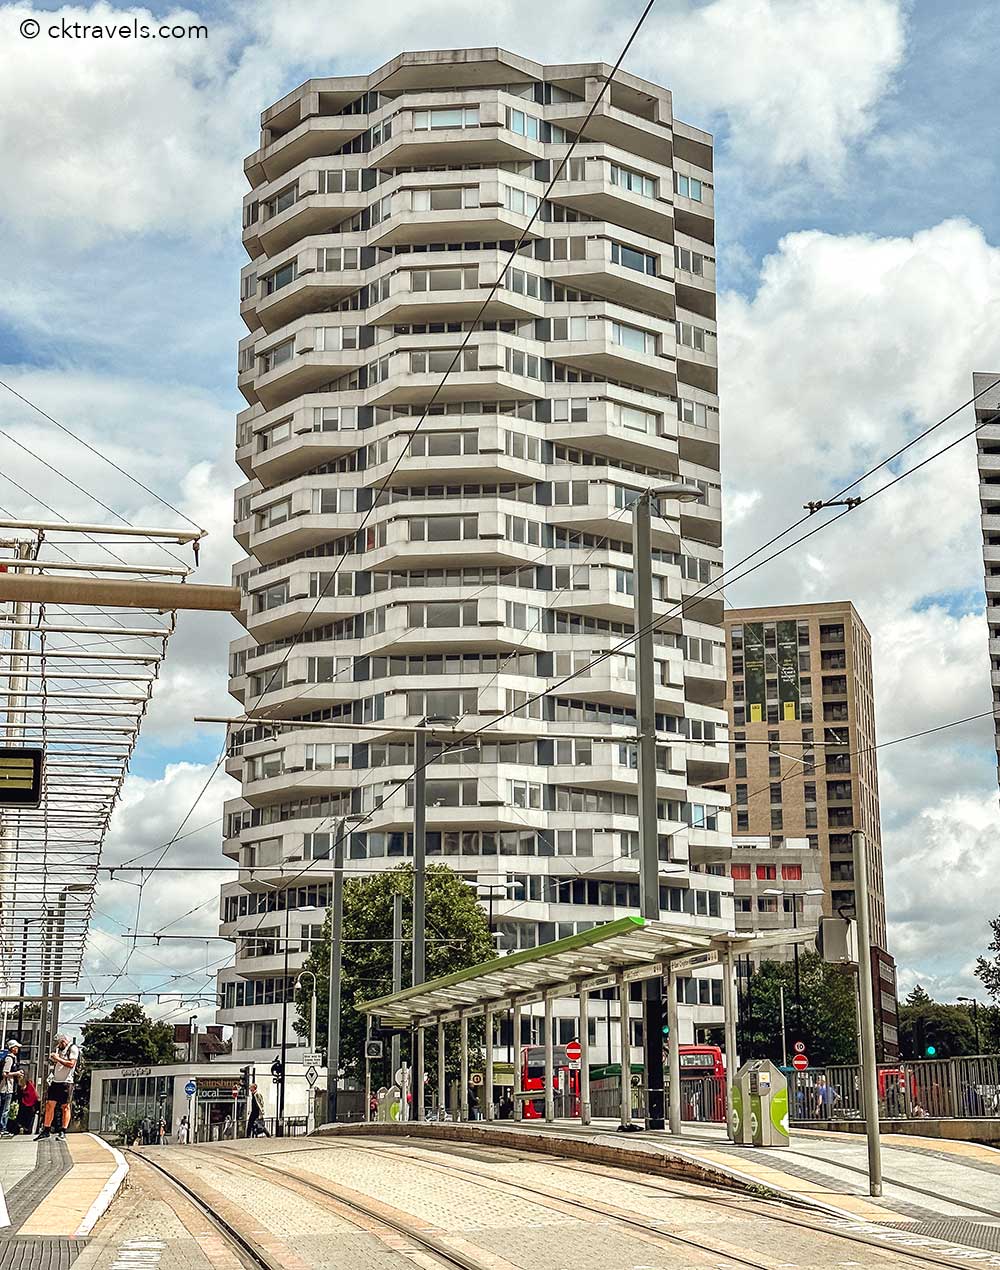 ‘No 1’ Brutalist Building Croydon - AKA the 50p Tower Brutalism